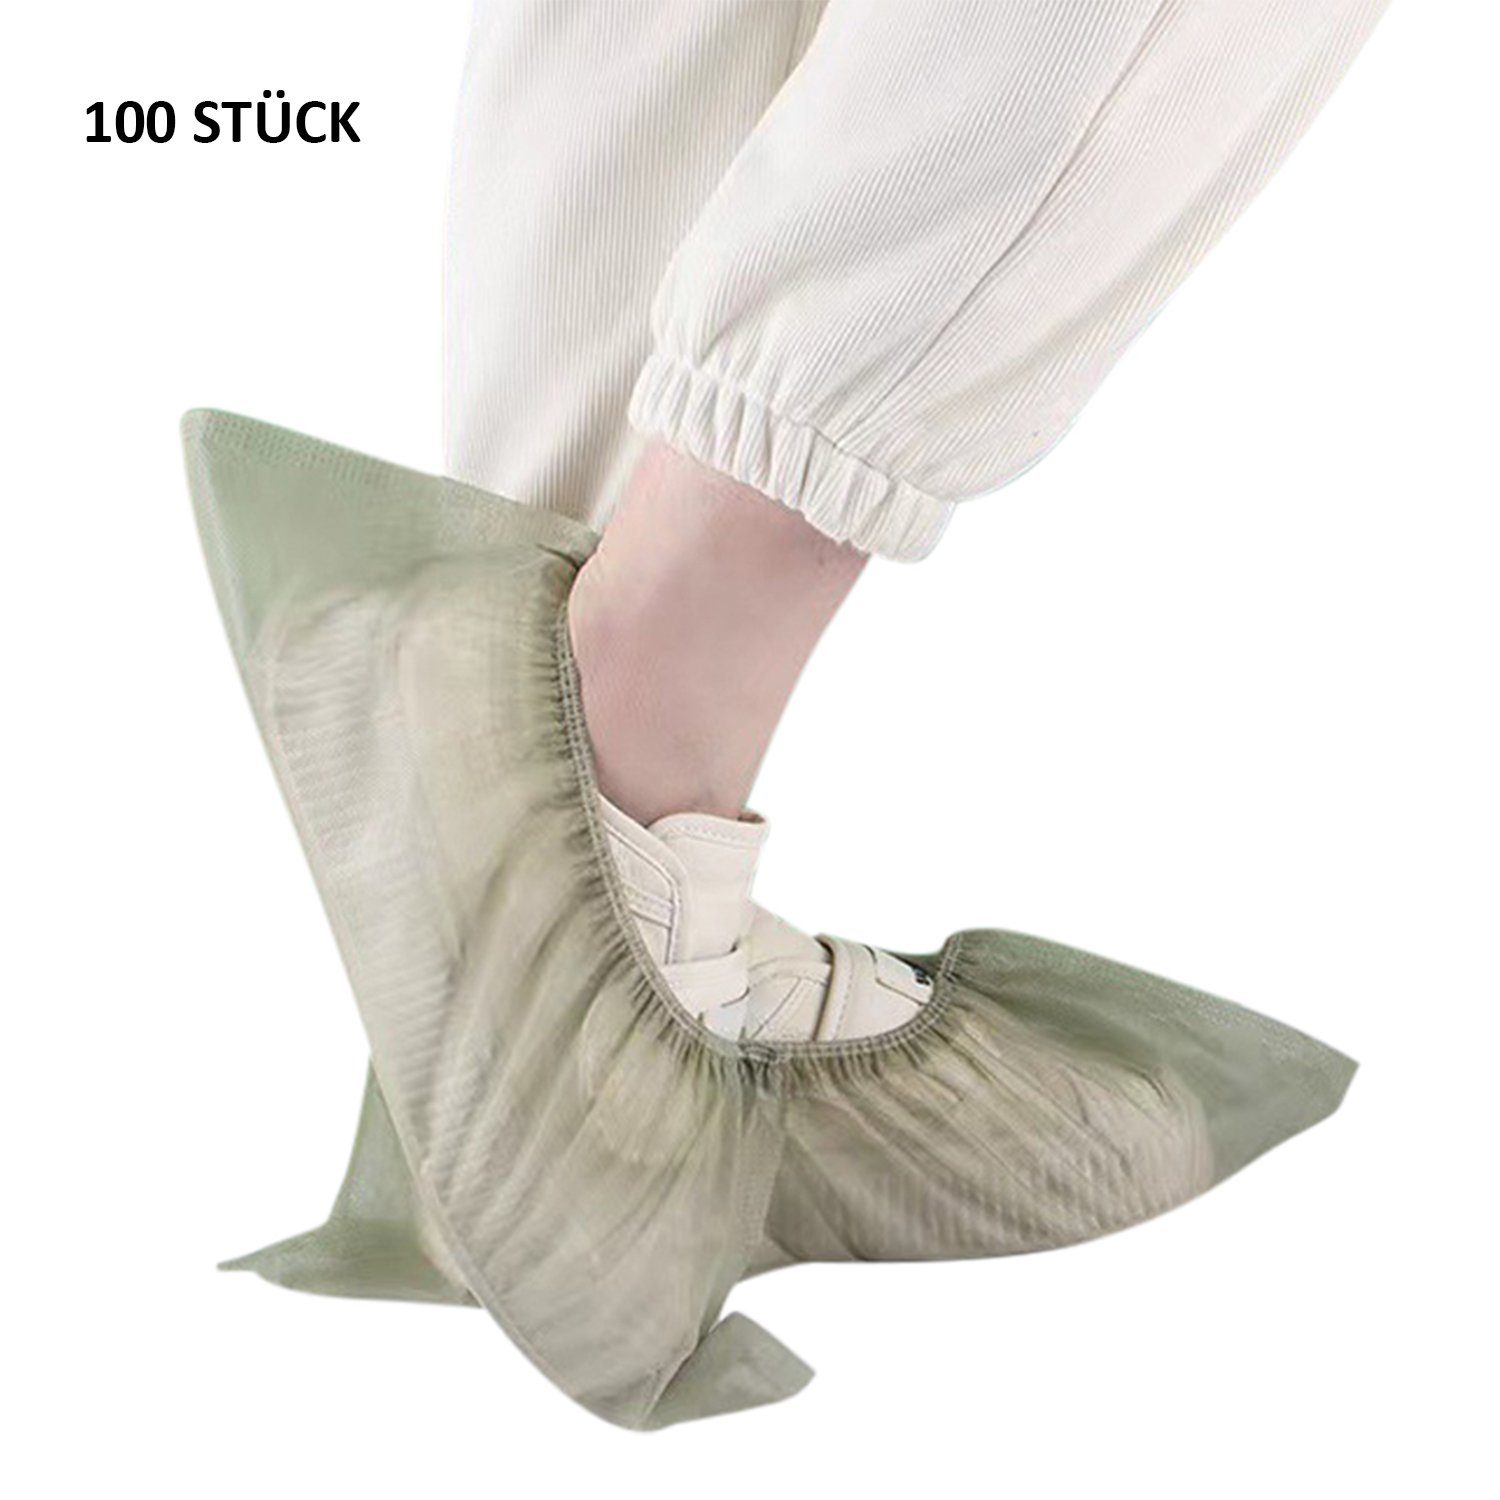 Daisred rutschfest Schuhüberzieher Stück Grün hygienische Einweg-Stiefel Schuhüberzieher 100